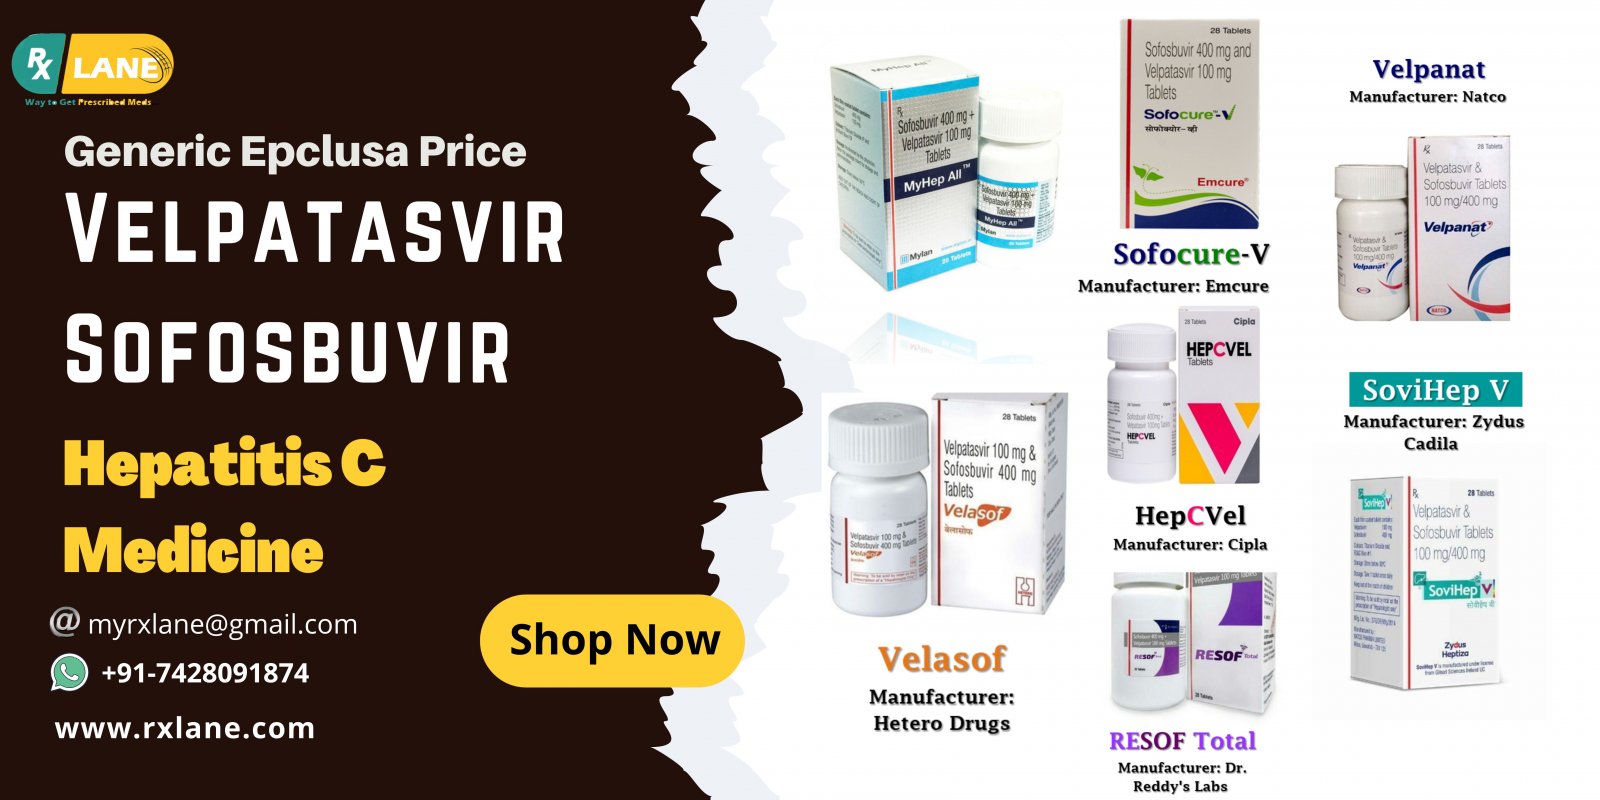 Buy Velpatasvir Sofosbuvir Tablet Wholesale Price Generic Epclusa Philippines